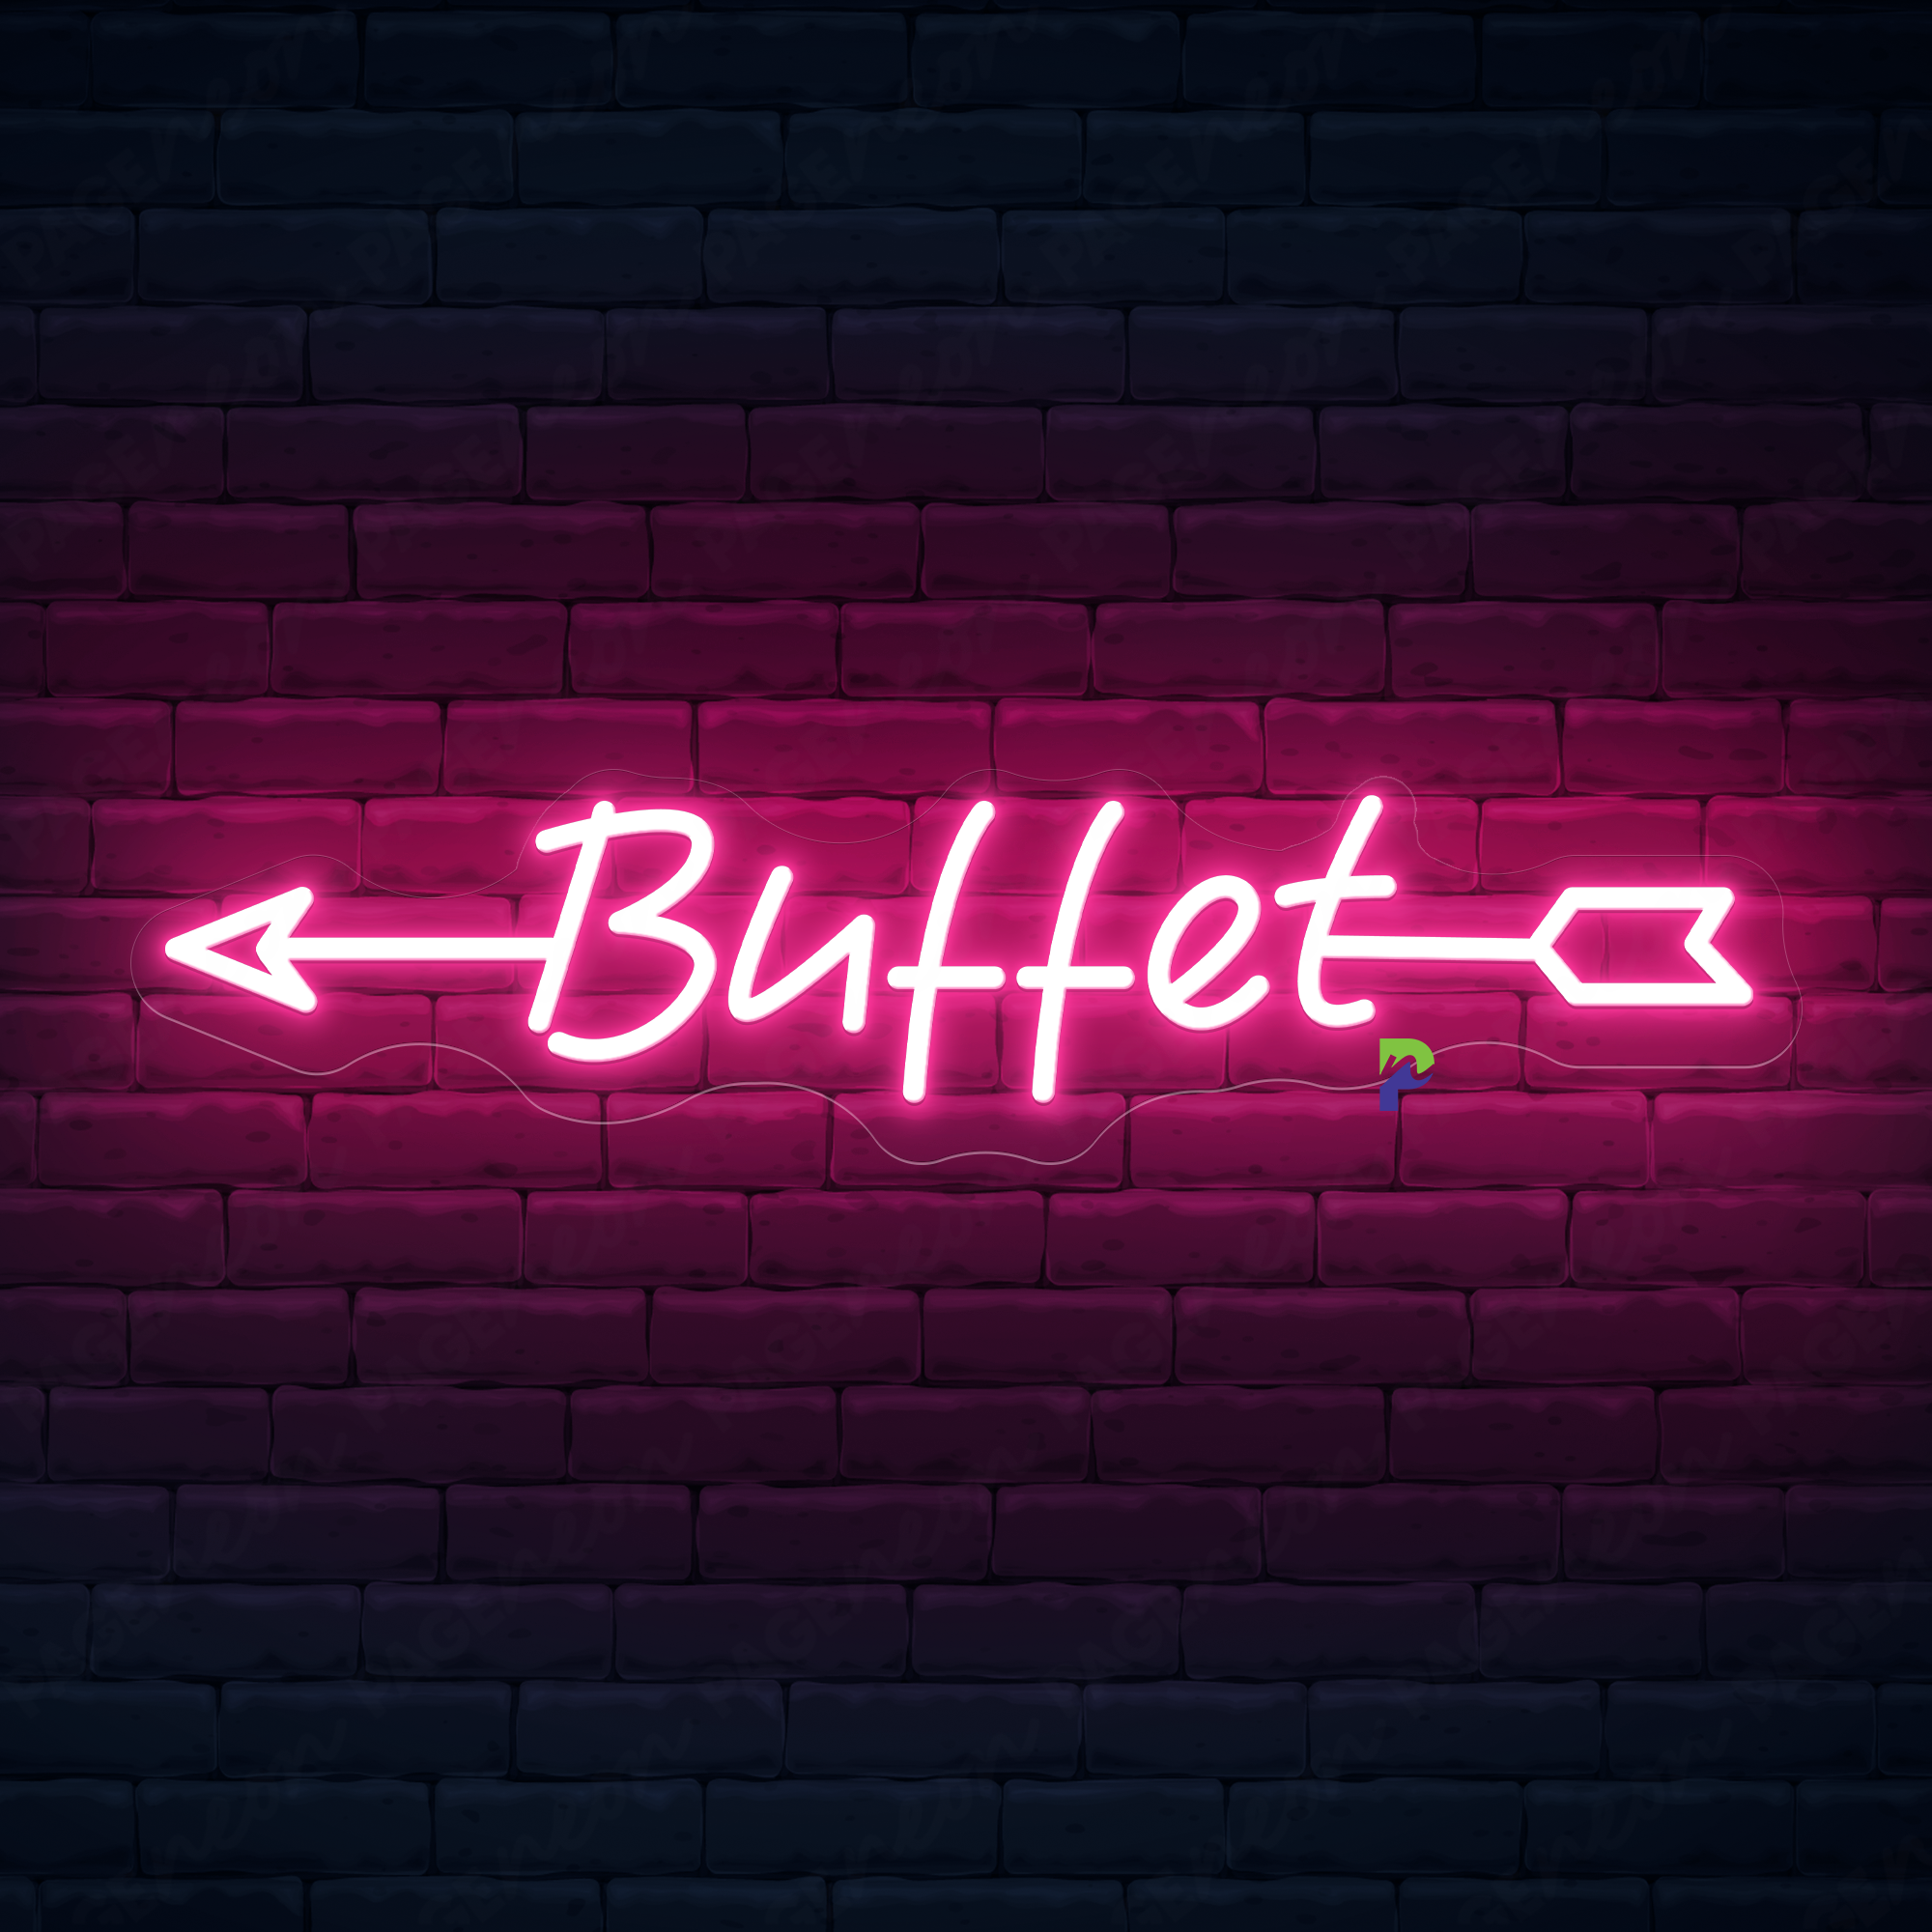 Buffet Neon Sign Custom Arrow Led Light